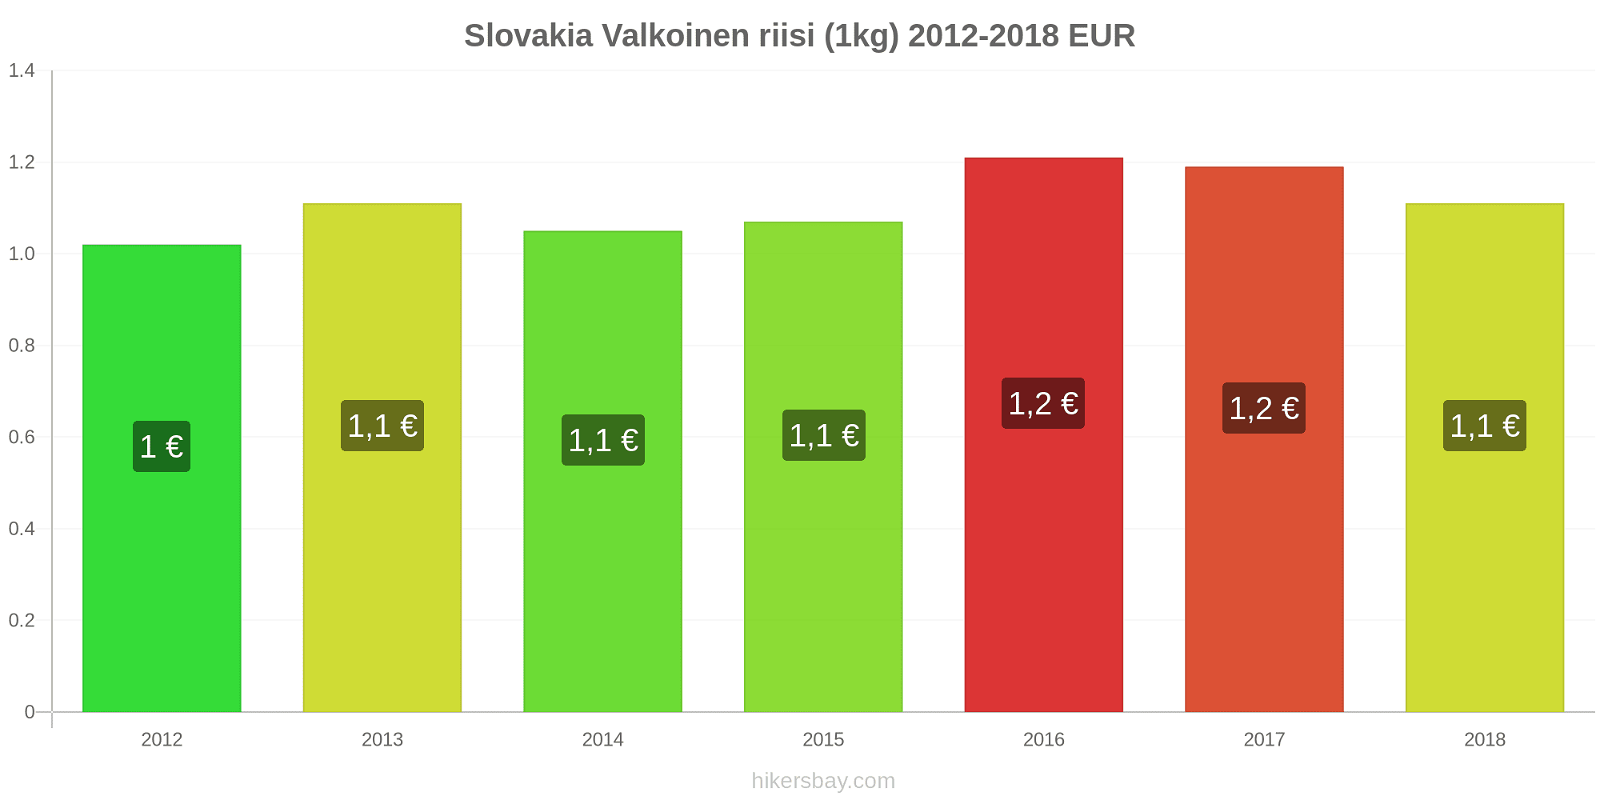 Slovakia hintojen muutokset Valkoinen riisi (1kg) hikersbay.com